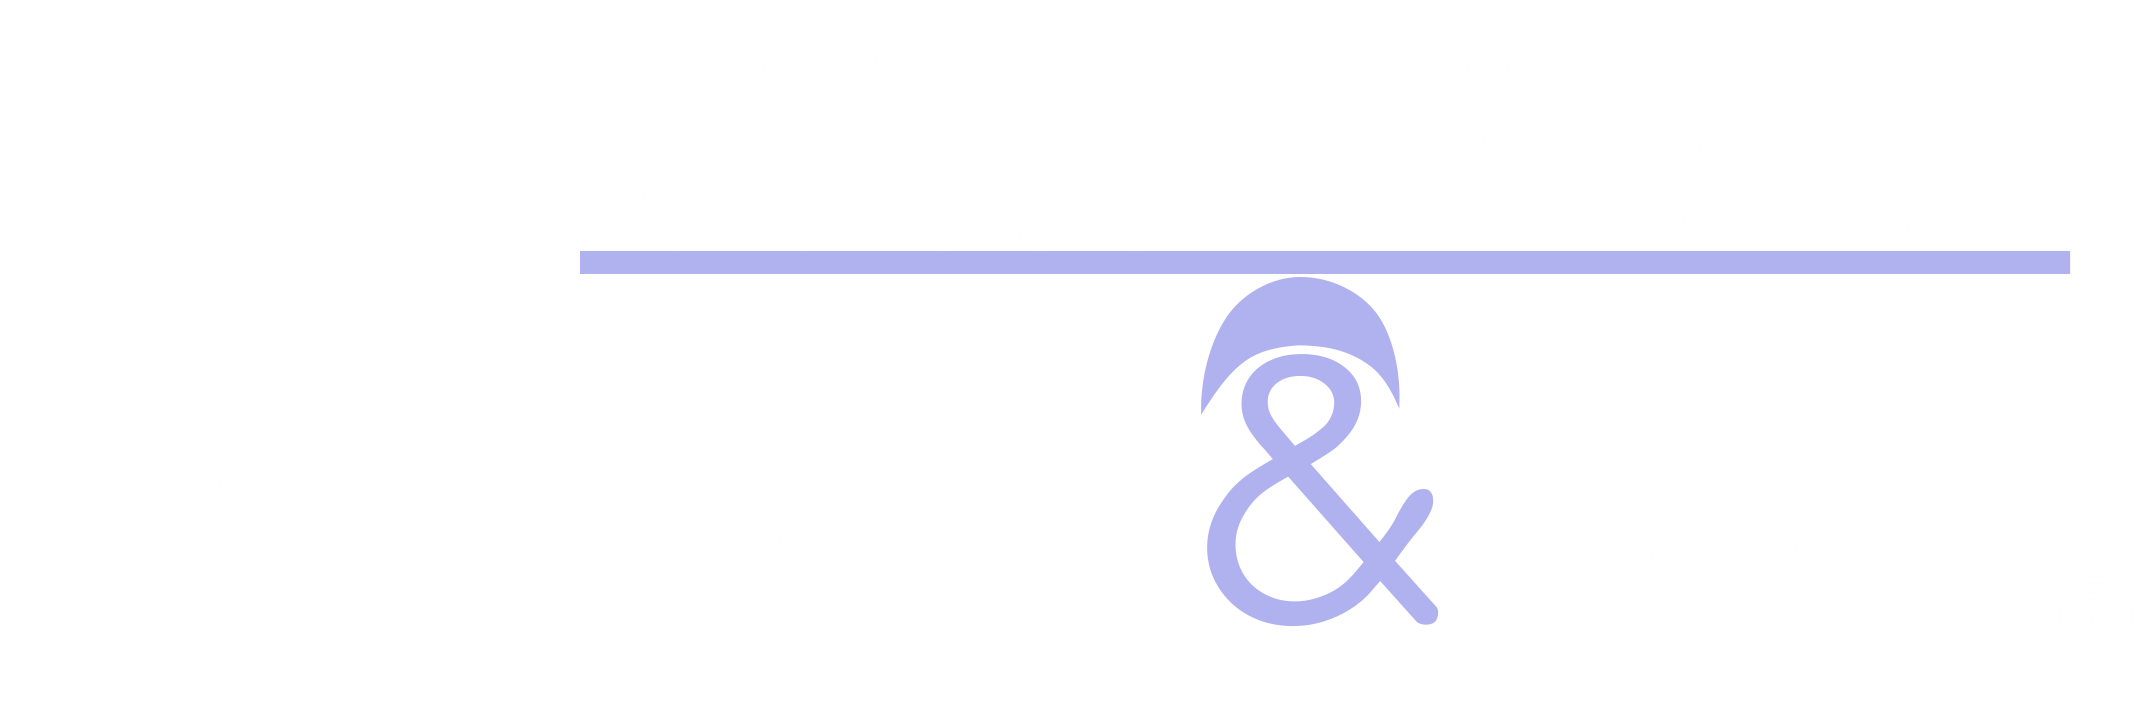 Win people win job